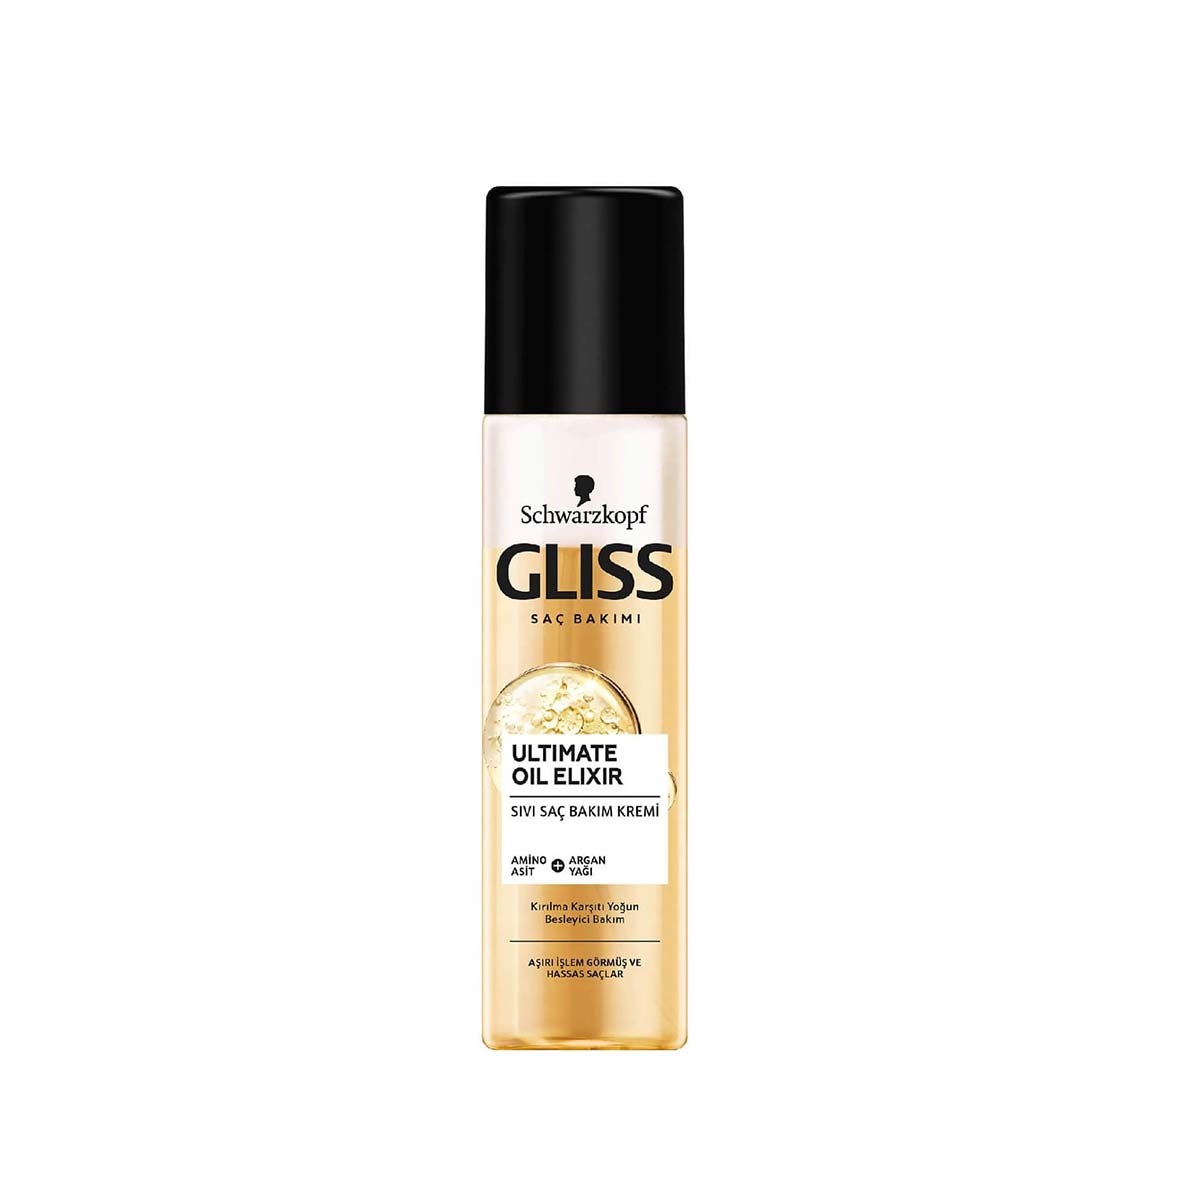 
اسپری دوفاز گلیس GLISS مدل Ultimate oil elixir مخصوص موهای حساس حجم 200 میل